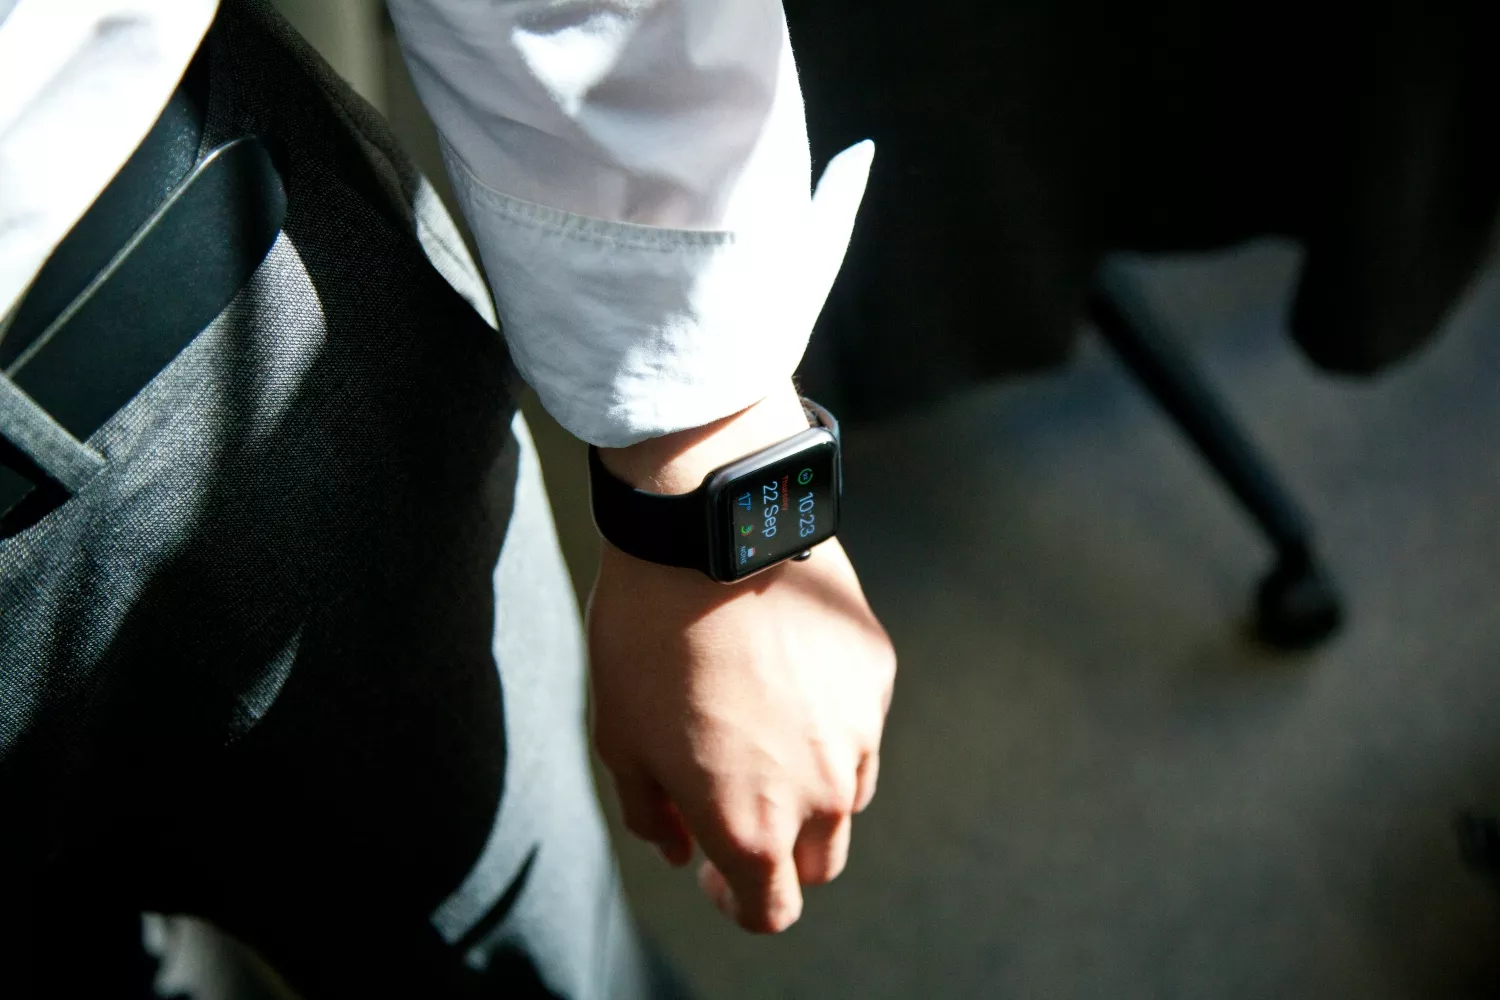 EEUU advierte: los relojes inteligentes no miden correctamente el nivel de  glucosa en sangre